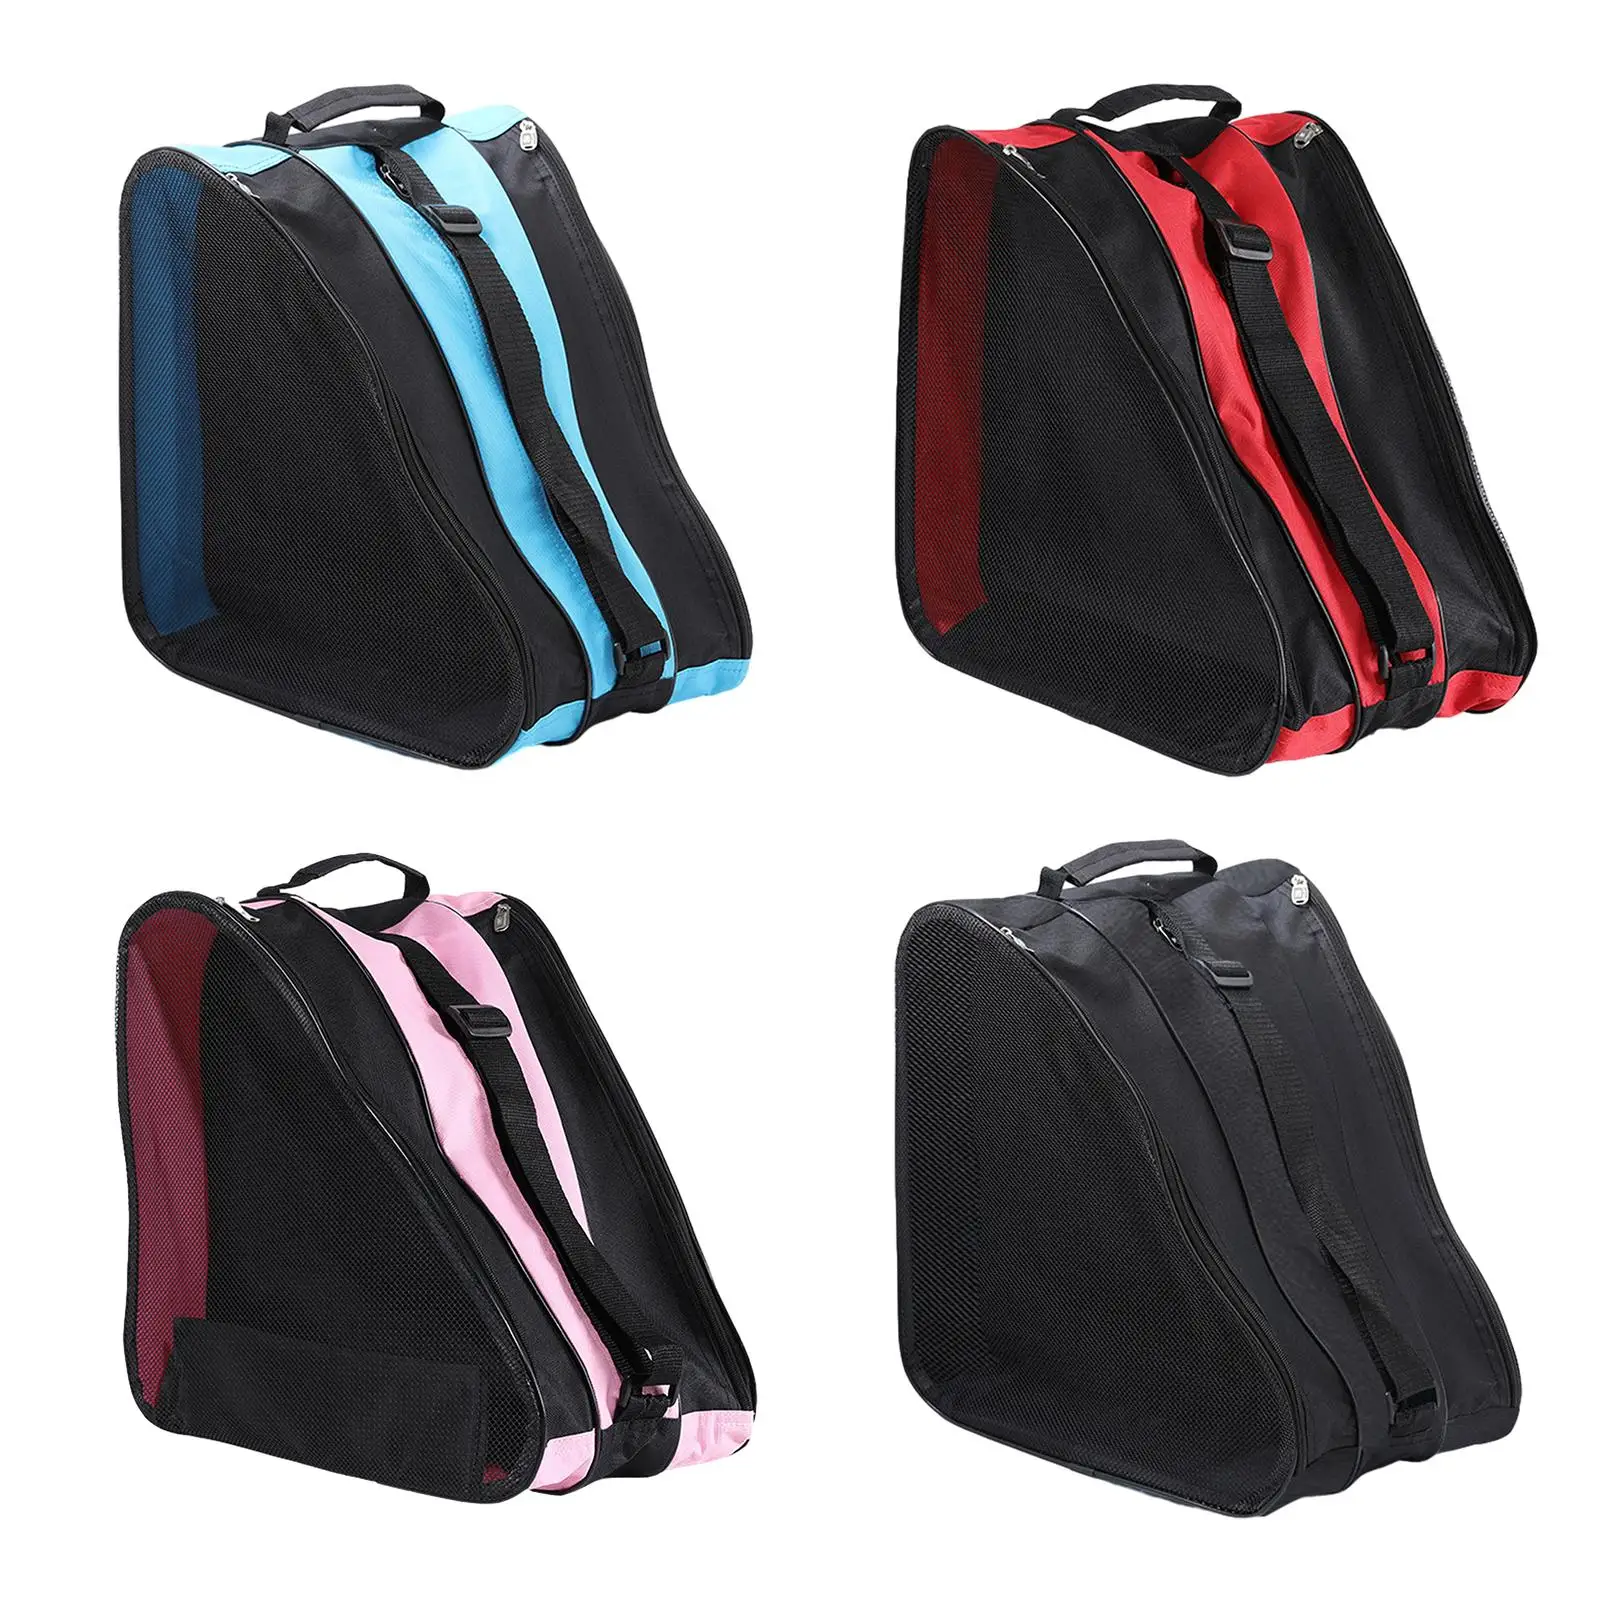 Skating Shoes Bag Large Capacity Adjustable Shoulder Strap Roller Skates Bag